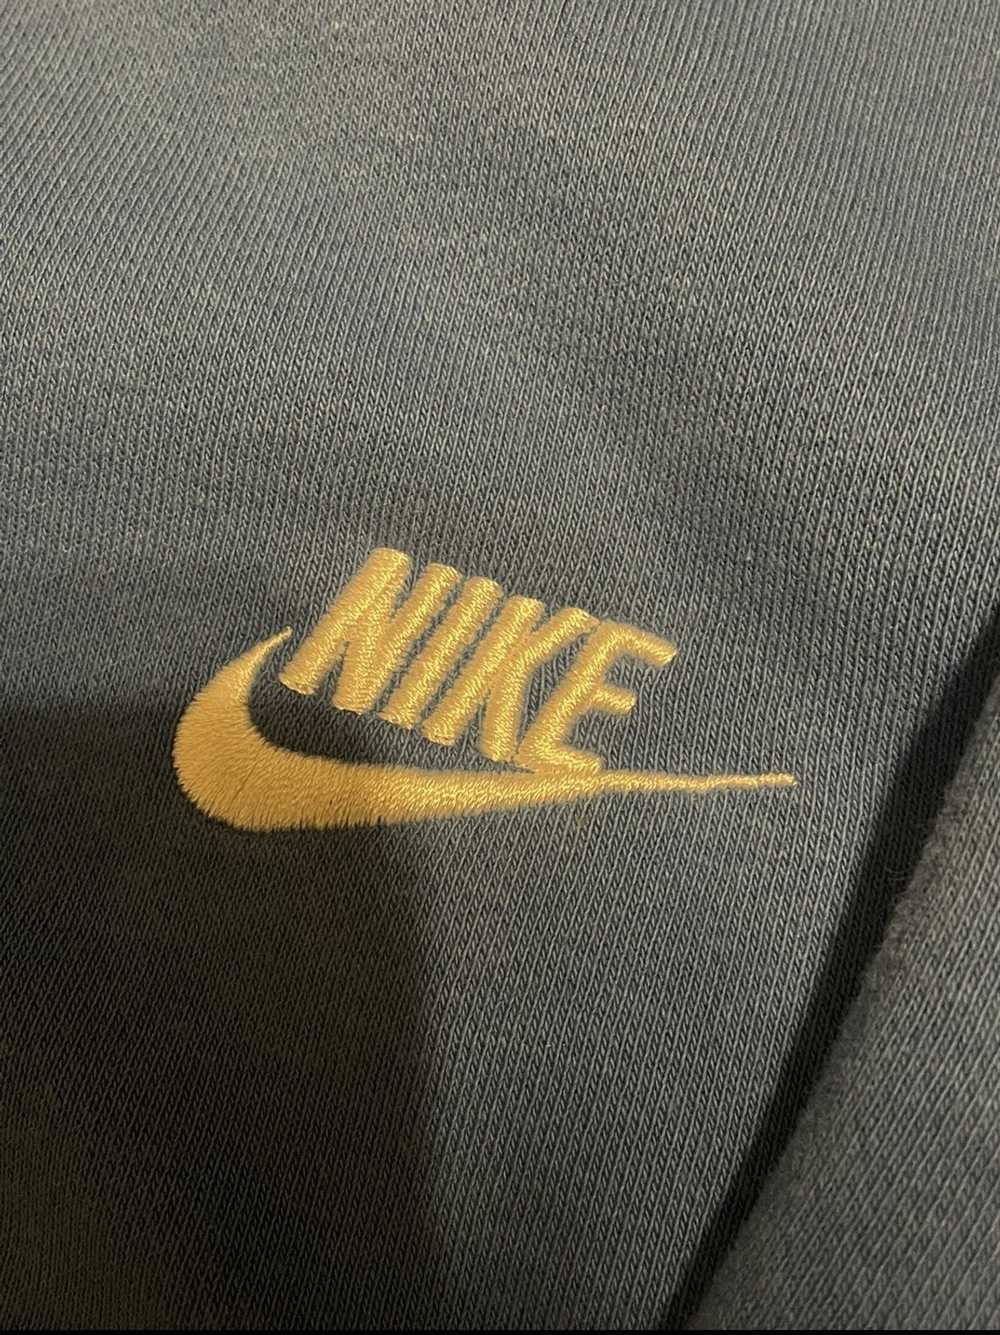 Nike Nike Zip Up Jacket - image 2